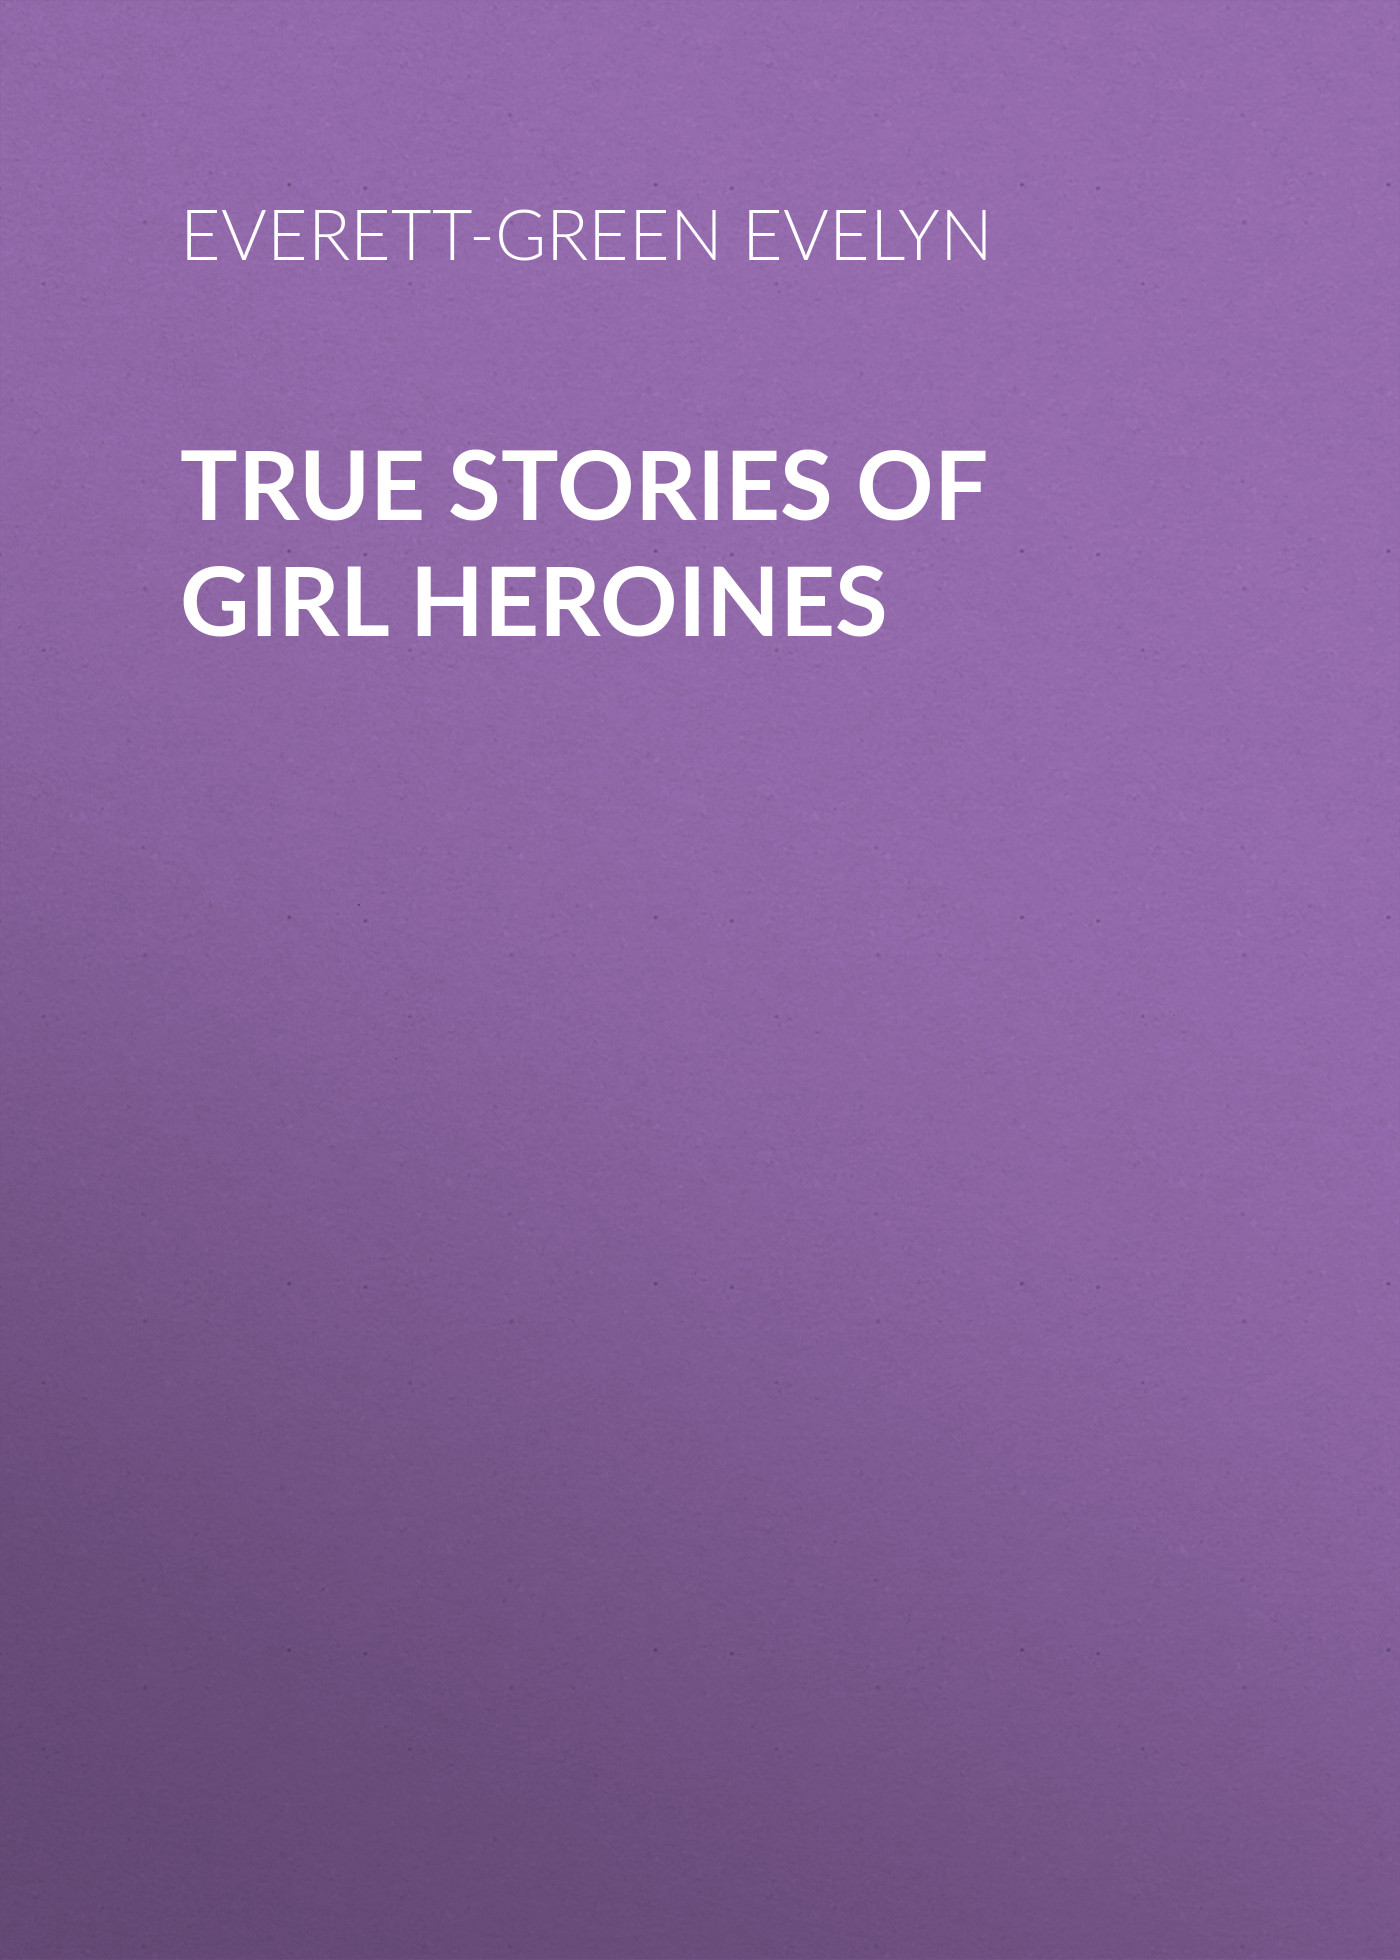 Книга True Stories of Girl Heroines из серии , созданная Evelyn Everett-Green, может относится к жанру Зарубежная старинная литература, Зарубежная классика, Биографии и Мемуары. Стоимость электронной книги True Stories of Girl Heroines с идентификатором 24713121 составляет 0 руб.